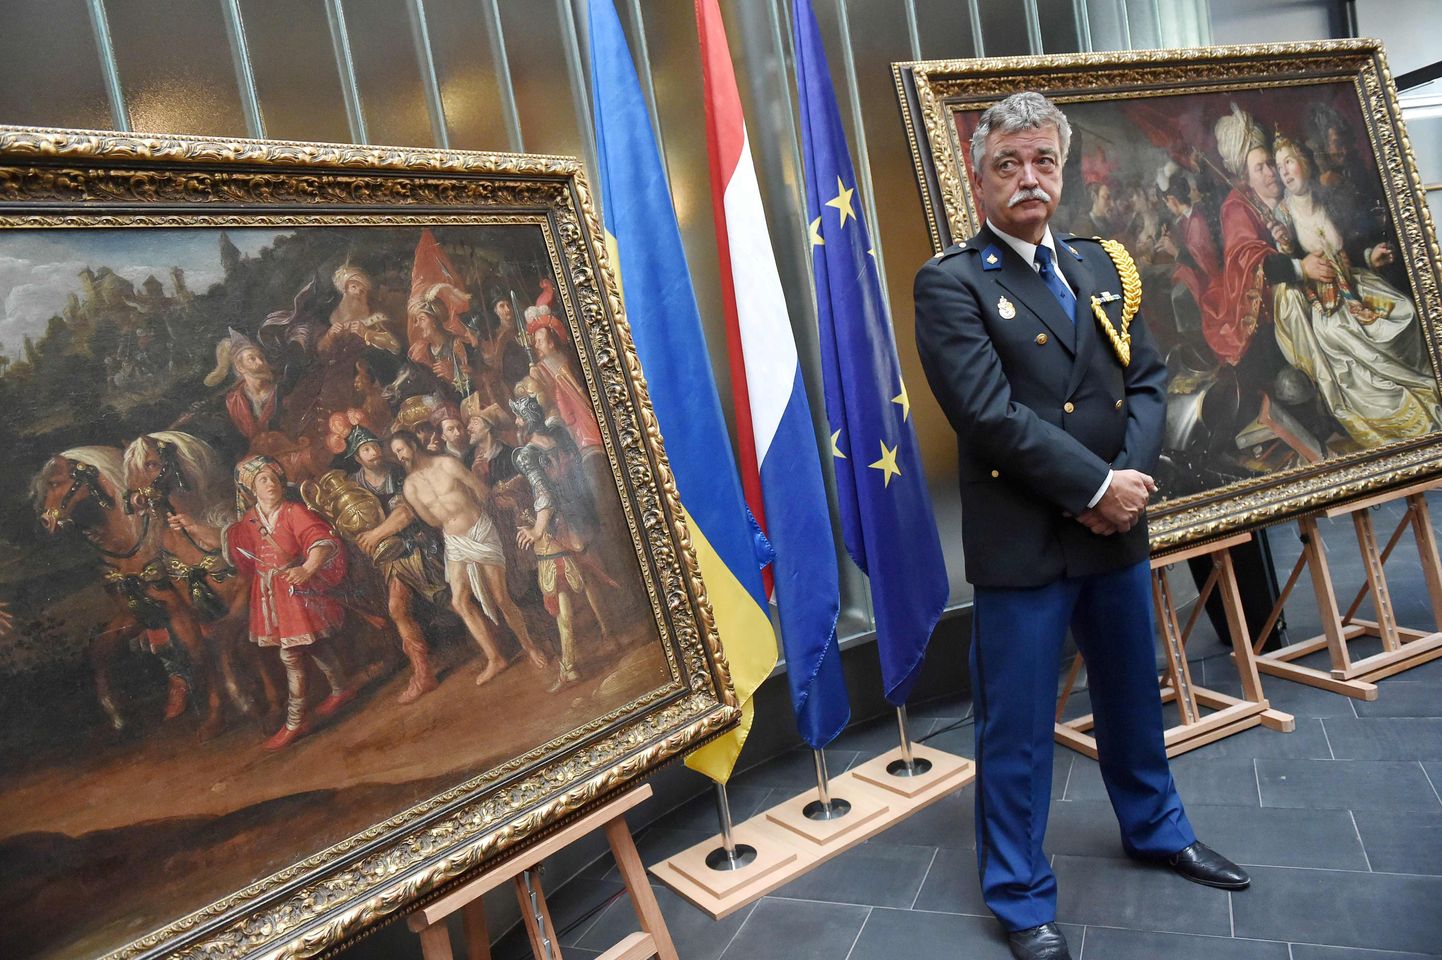 Hollandi ametnik üleantud taieste juures.